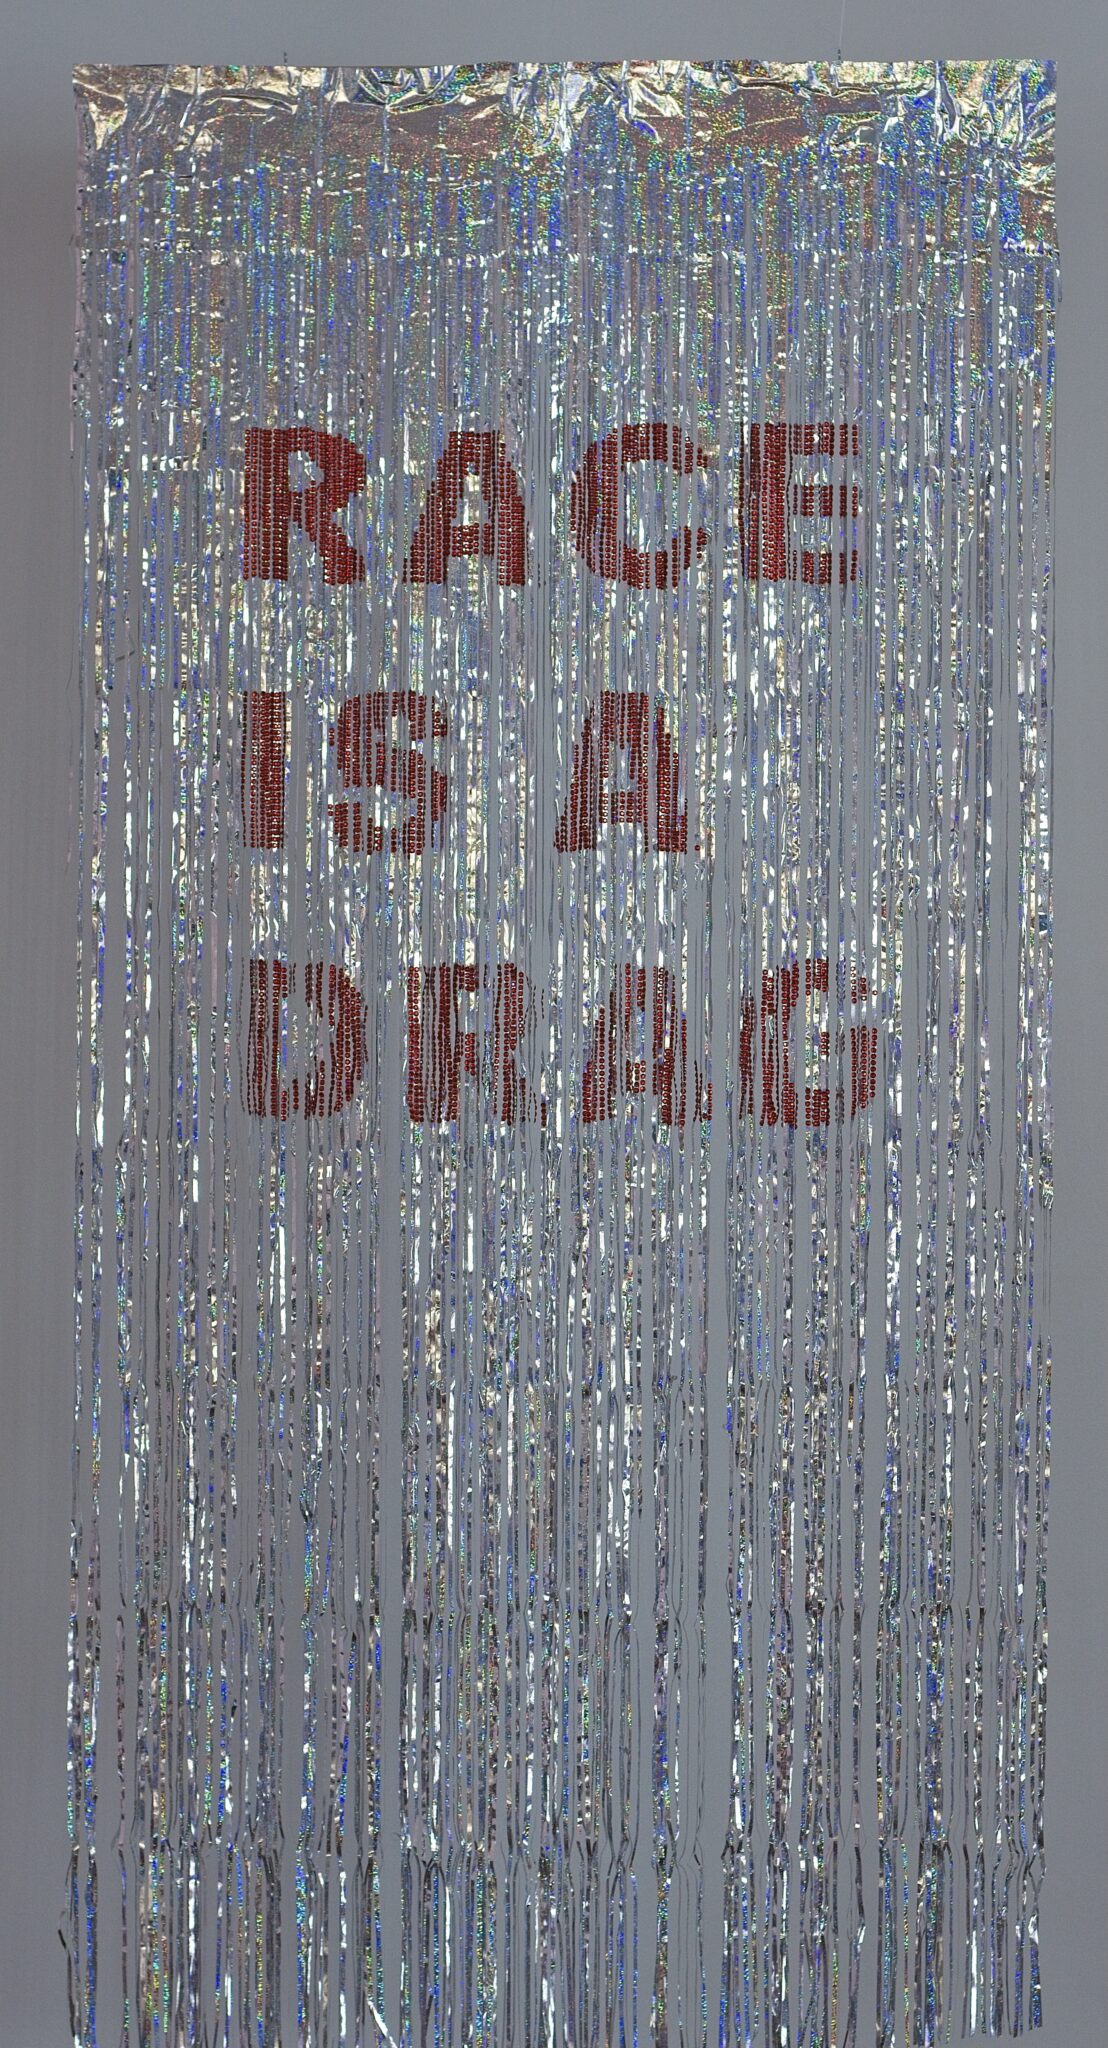 Brandon Gercara, Race is a drag !, d'après Kama La Mackerel, 2021, Installation, strass sur rideau à frange, 100 × 400 cm (Adagp, Paris, 2023).